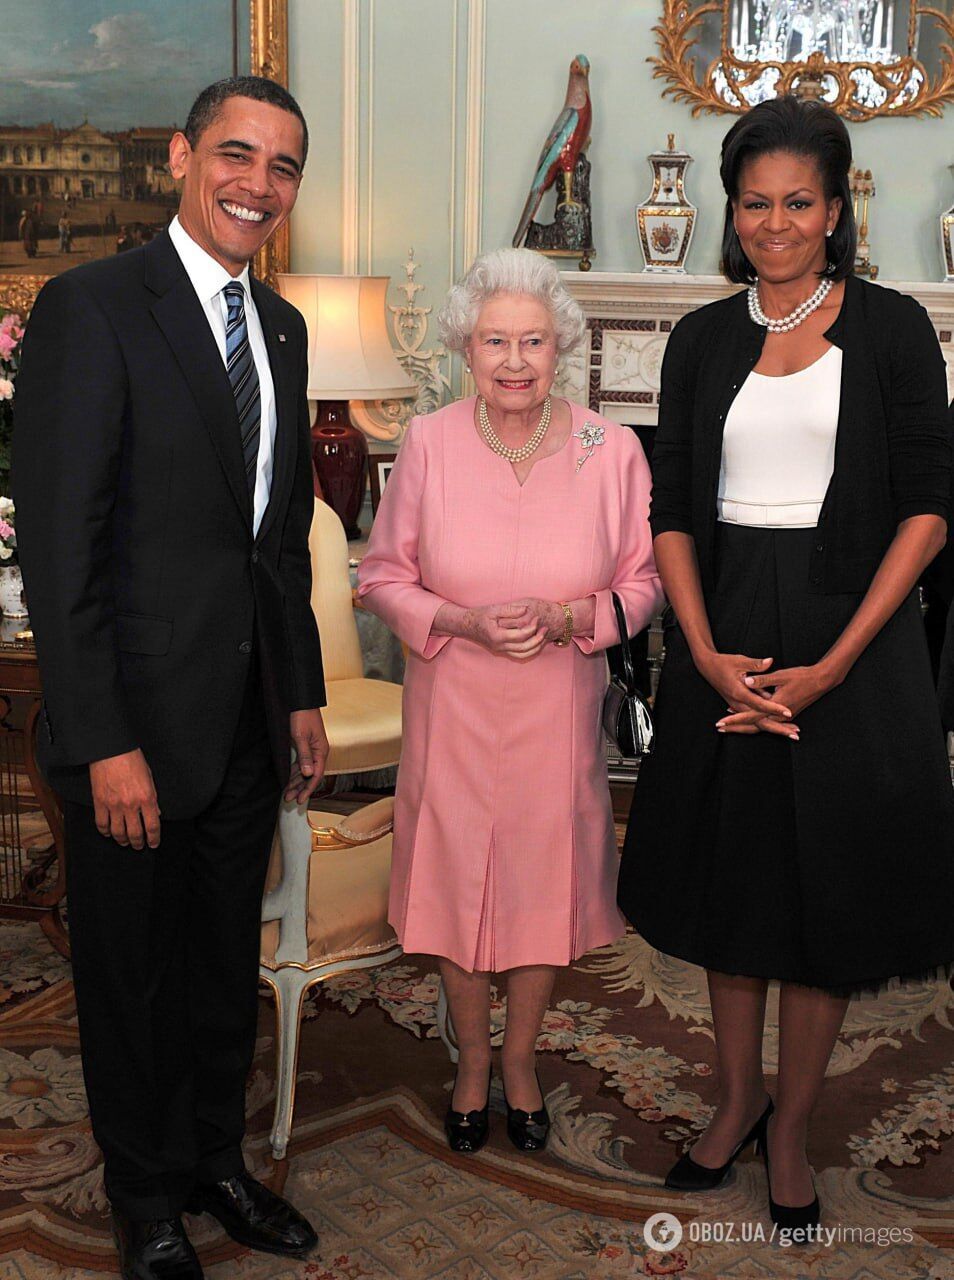 Елизавета II была в восторге: стало известно, какой "некоролевский" подарок от Барака Обамы очень поразил монархиню